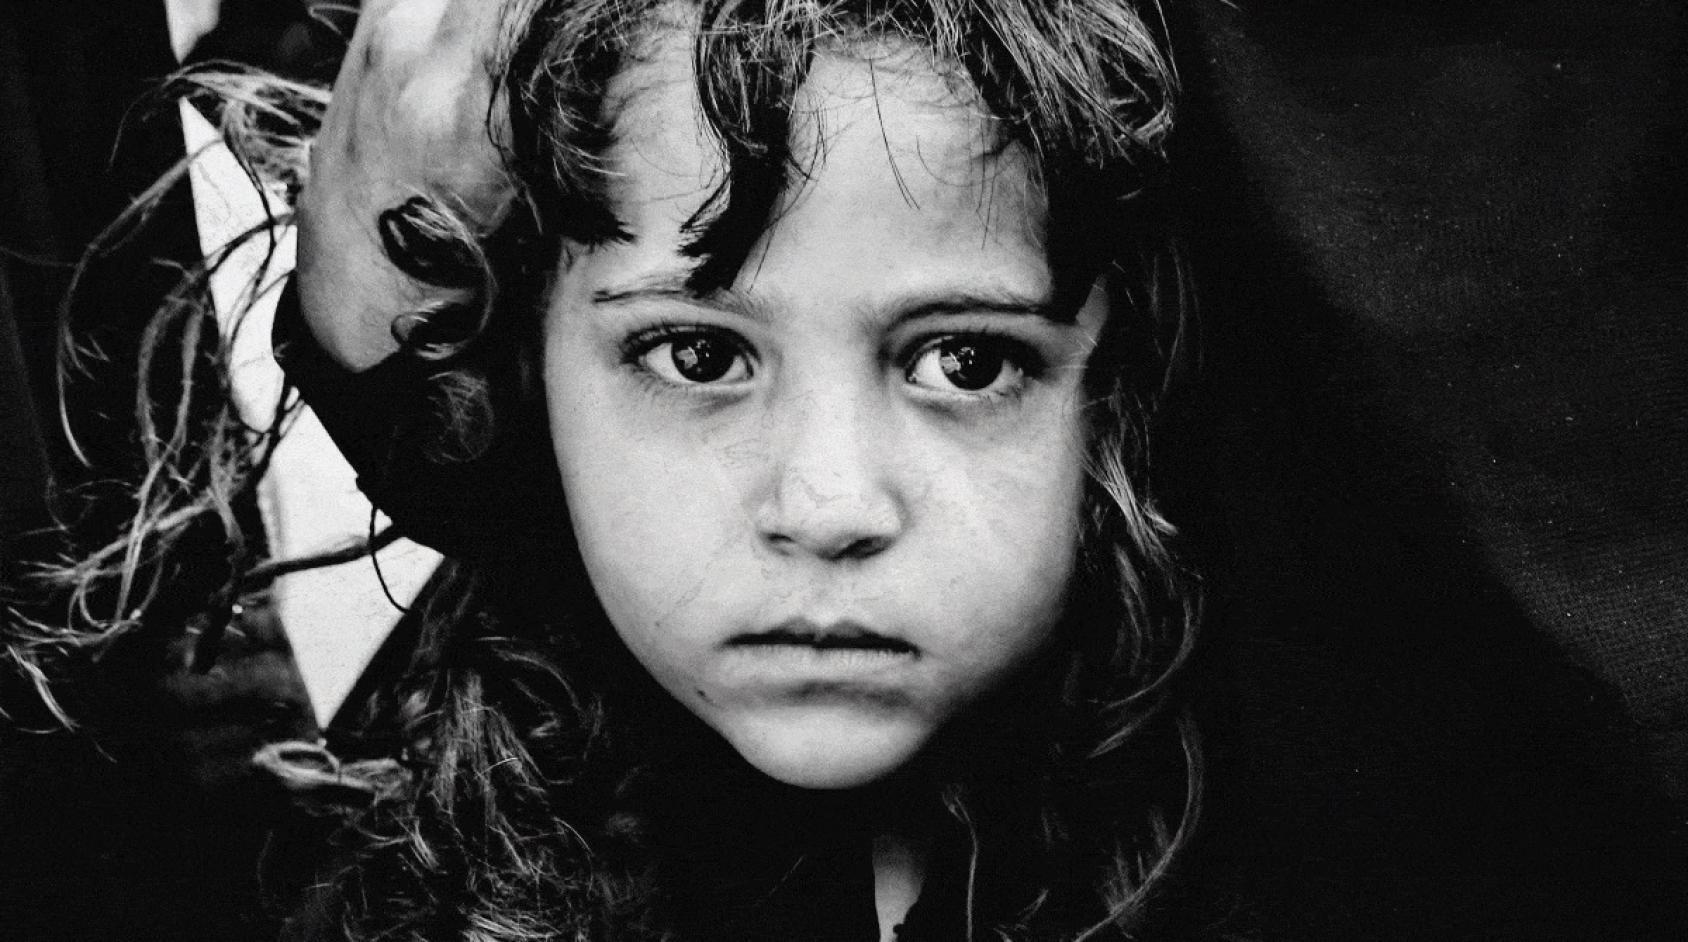 صورة مقربة لفتاة يمنية صغيرة بالأبيض والأسود.